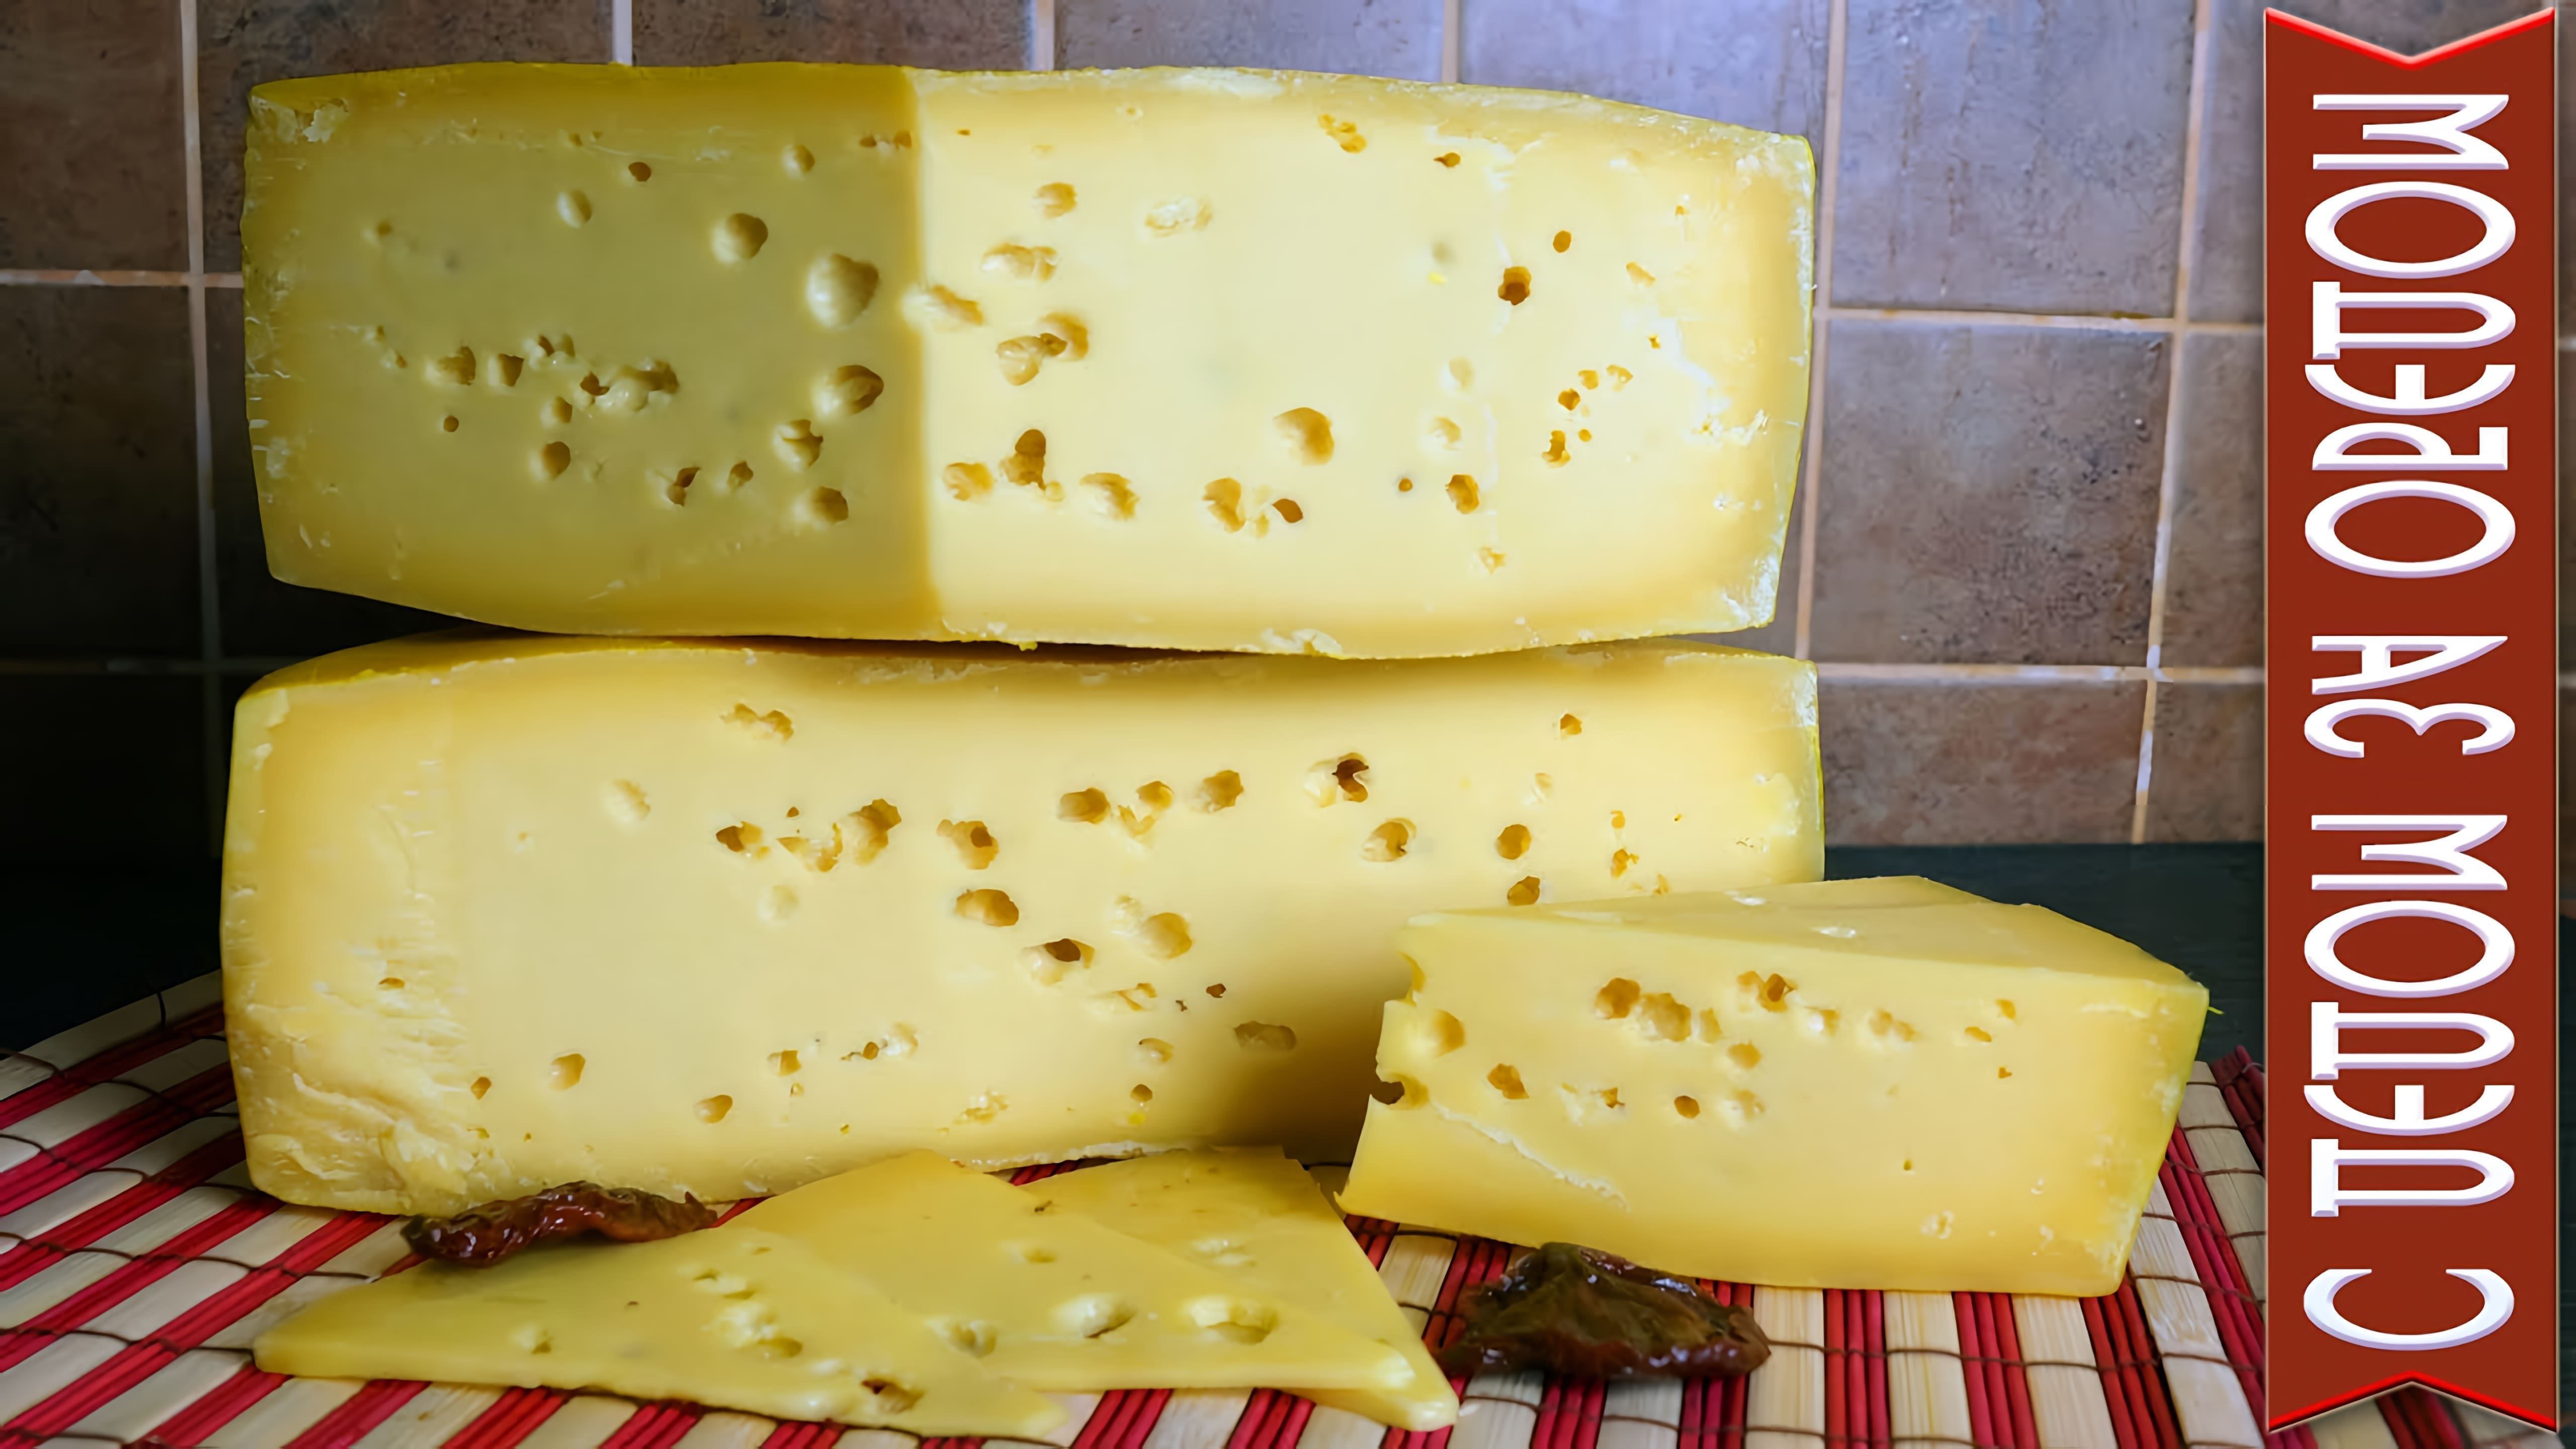 В данном видео демонстрируется процесс приготовления норвежского сыра Ярлсберг